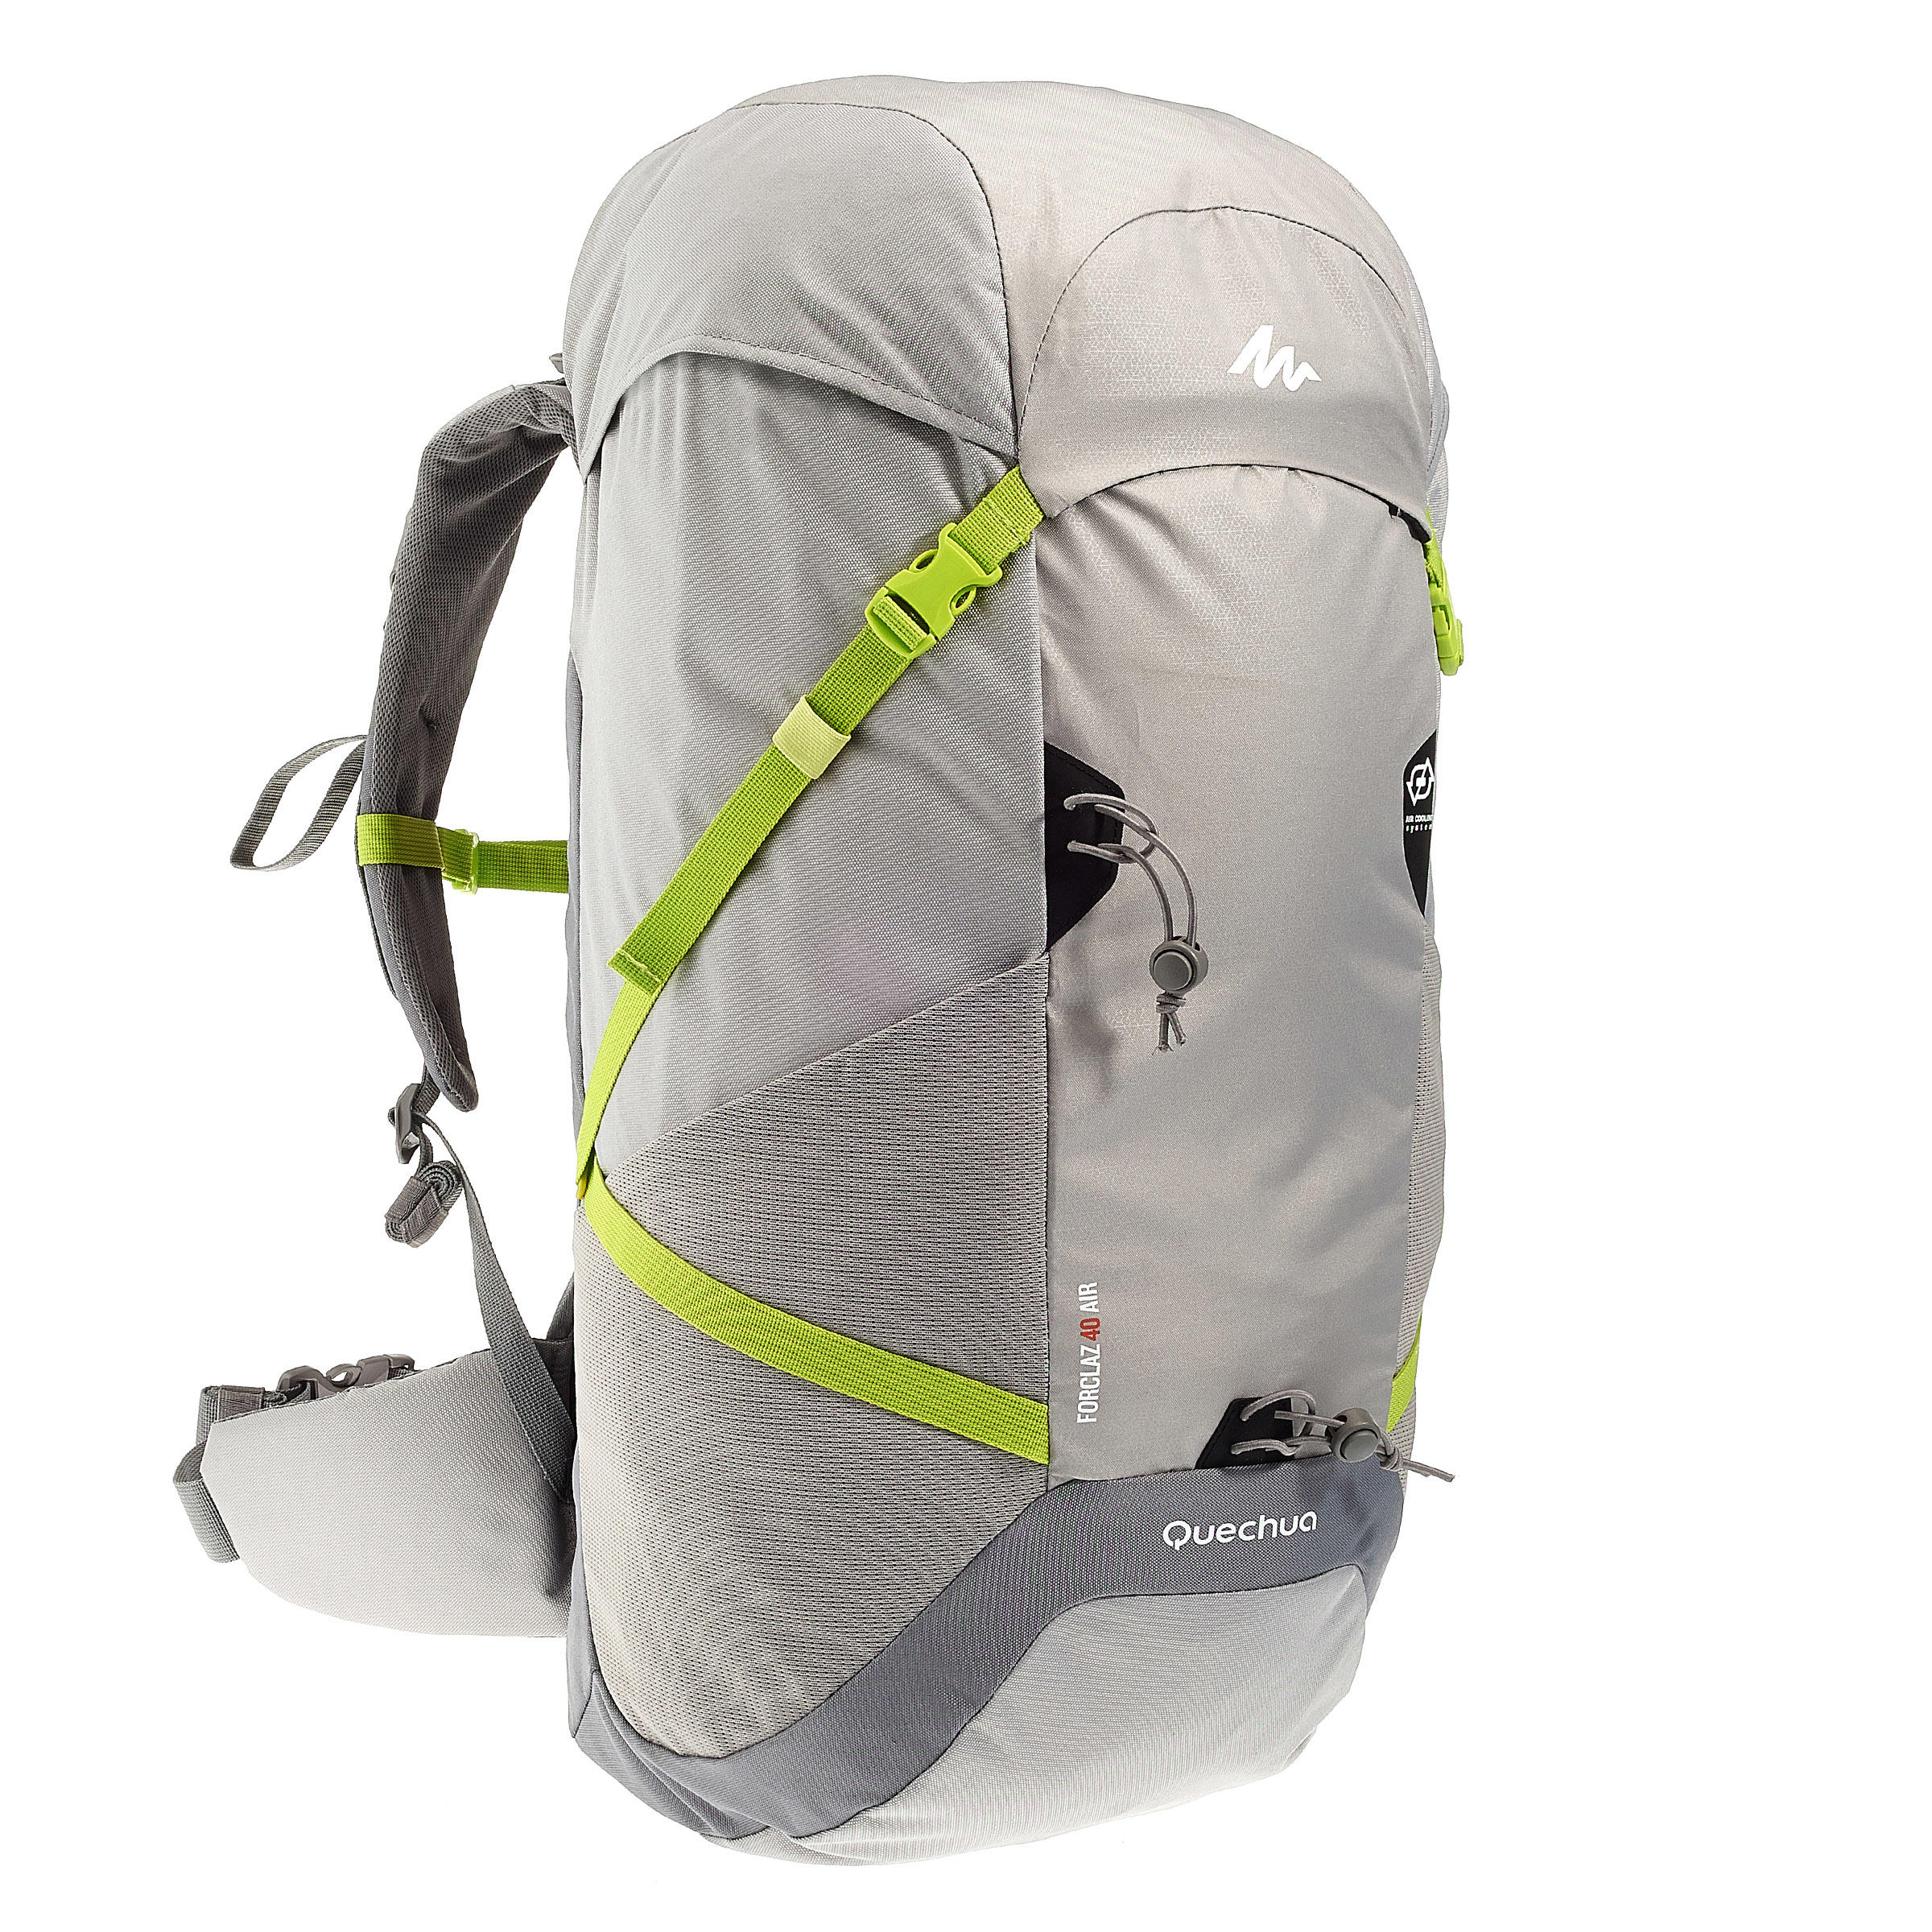 FORCLAZ 40 AIR backpack BLUE: AIR COOLING Label - regulates back perspiration 1/19